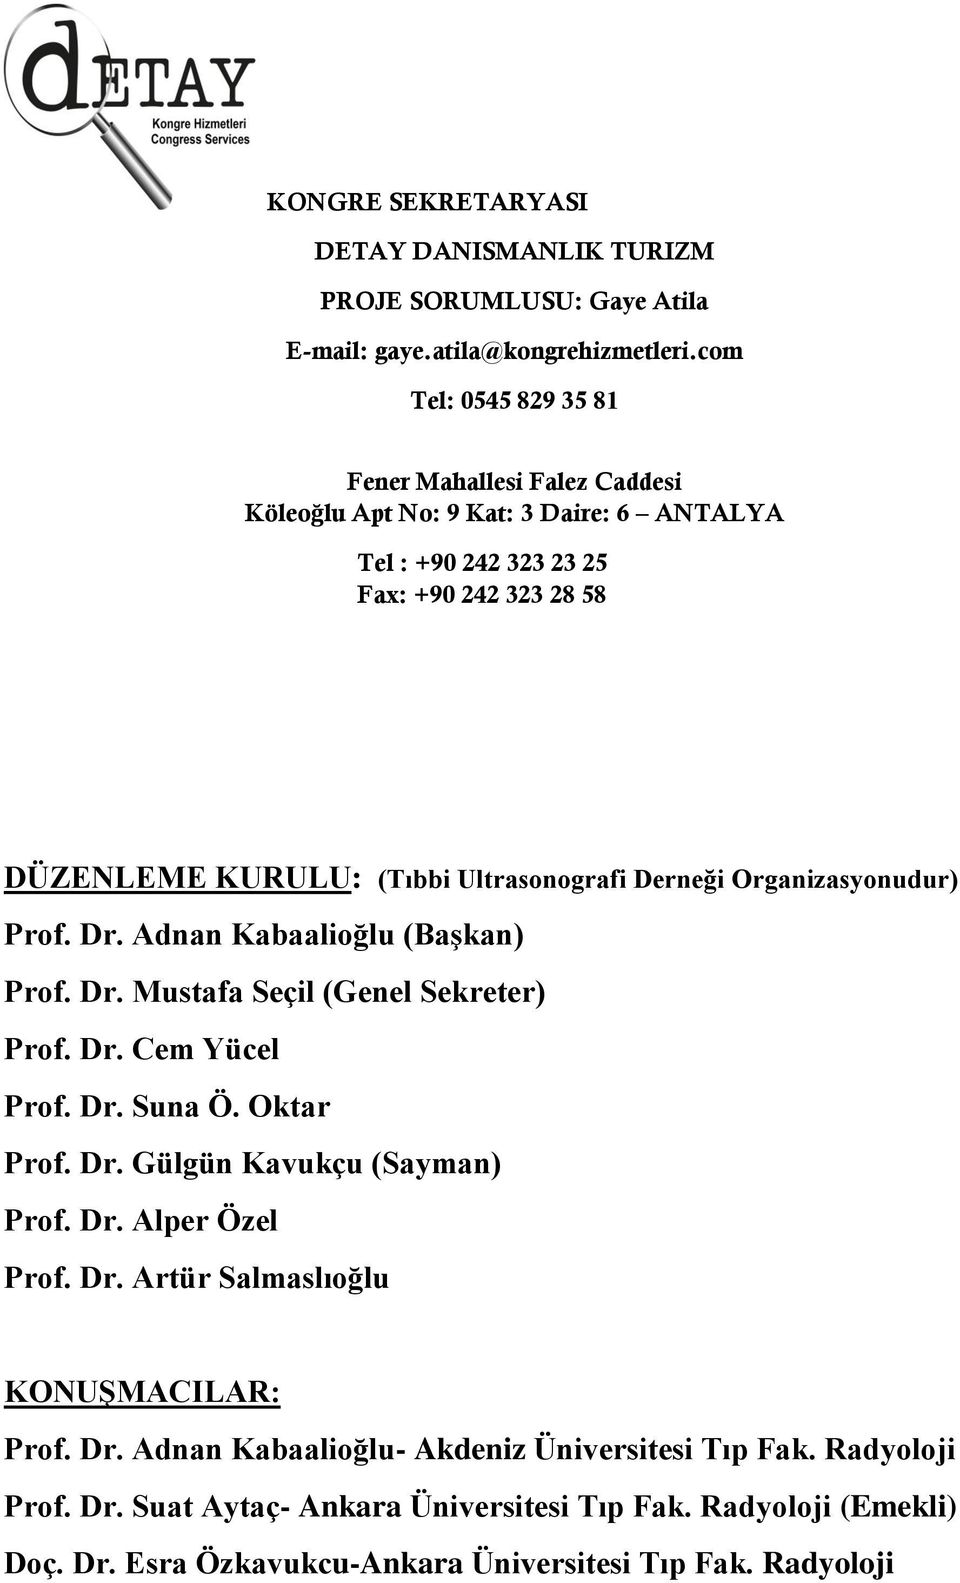 Derneği Organizasyonudur) Prof. Dr. Adnan Kabaalioğlu (Başkan) Prof. Dr. Mustafa Seçil (Genel Sekreter) Prof. Dr. Cem Yücel Prof. Dr. Suna Ö. Oktar Prof. Dr. Gülgün Kavukçu (Sayman) Prof.